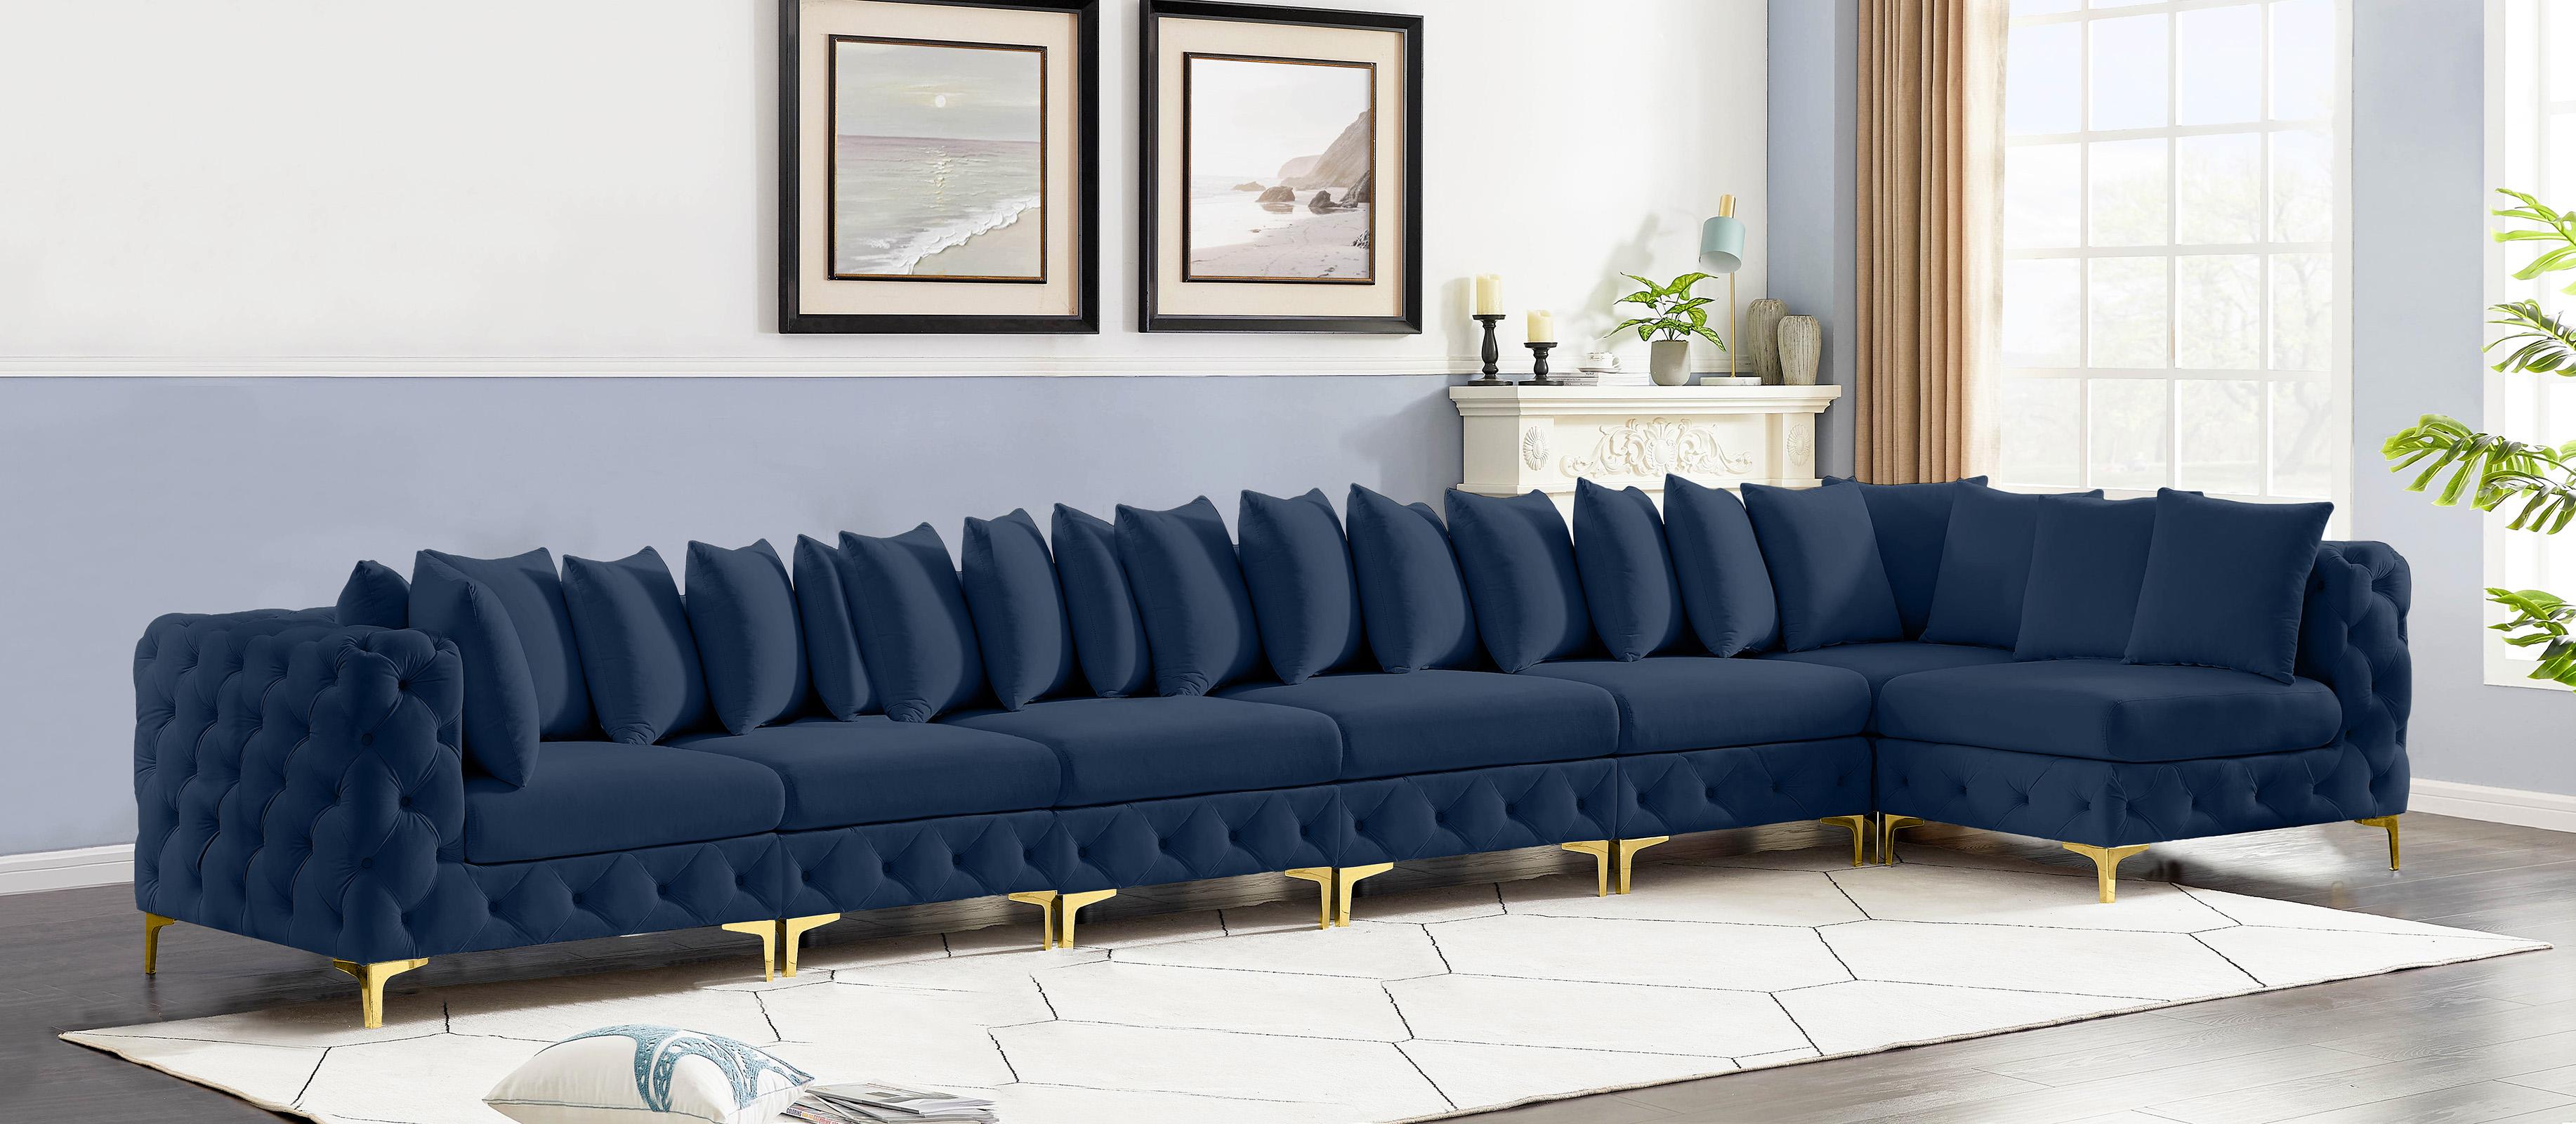 

    
686Navy-Sec7B Meridian Furniture Modular Sectional Sofa
